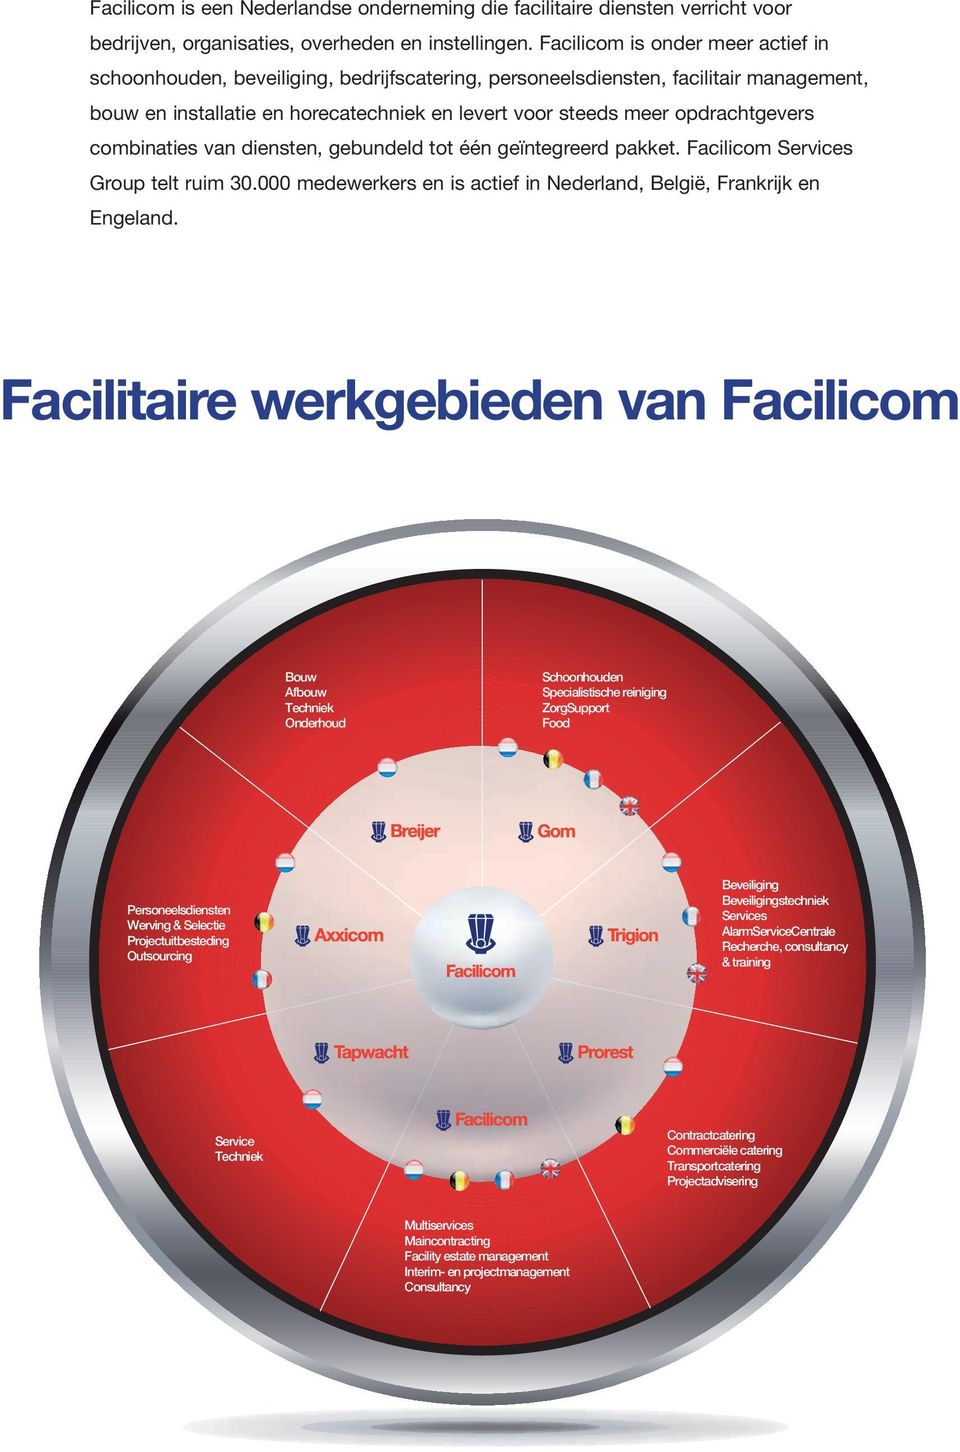 opdrachtgevers combinaties van diensten, gebundeld tot één geïntegreerd pakket. Facilicom Services Group telt ruim 30.000 medewerkers en is actief in Nederland, België, Frankrijk en Engeland.